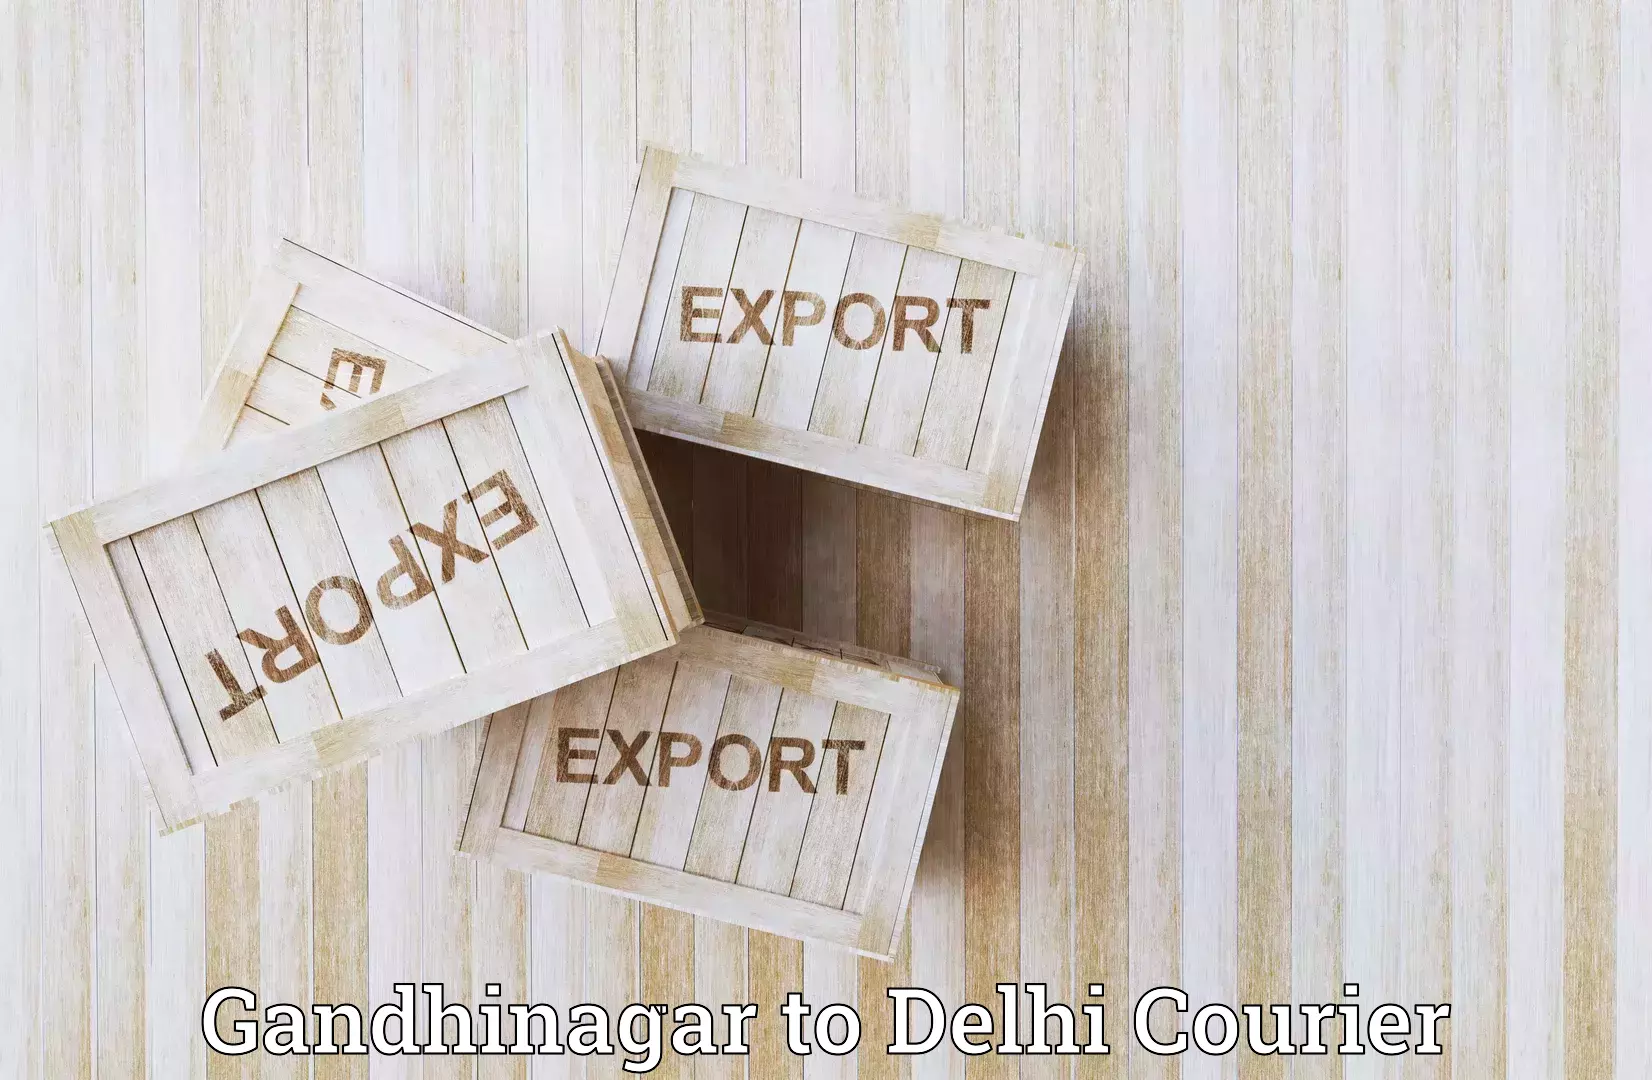 Local delivery service Gandhinagar to University of Delhi